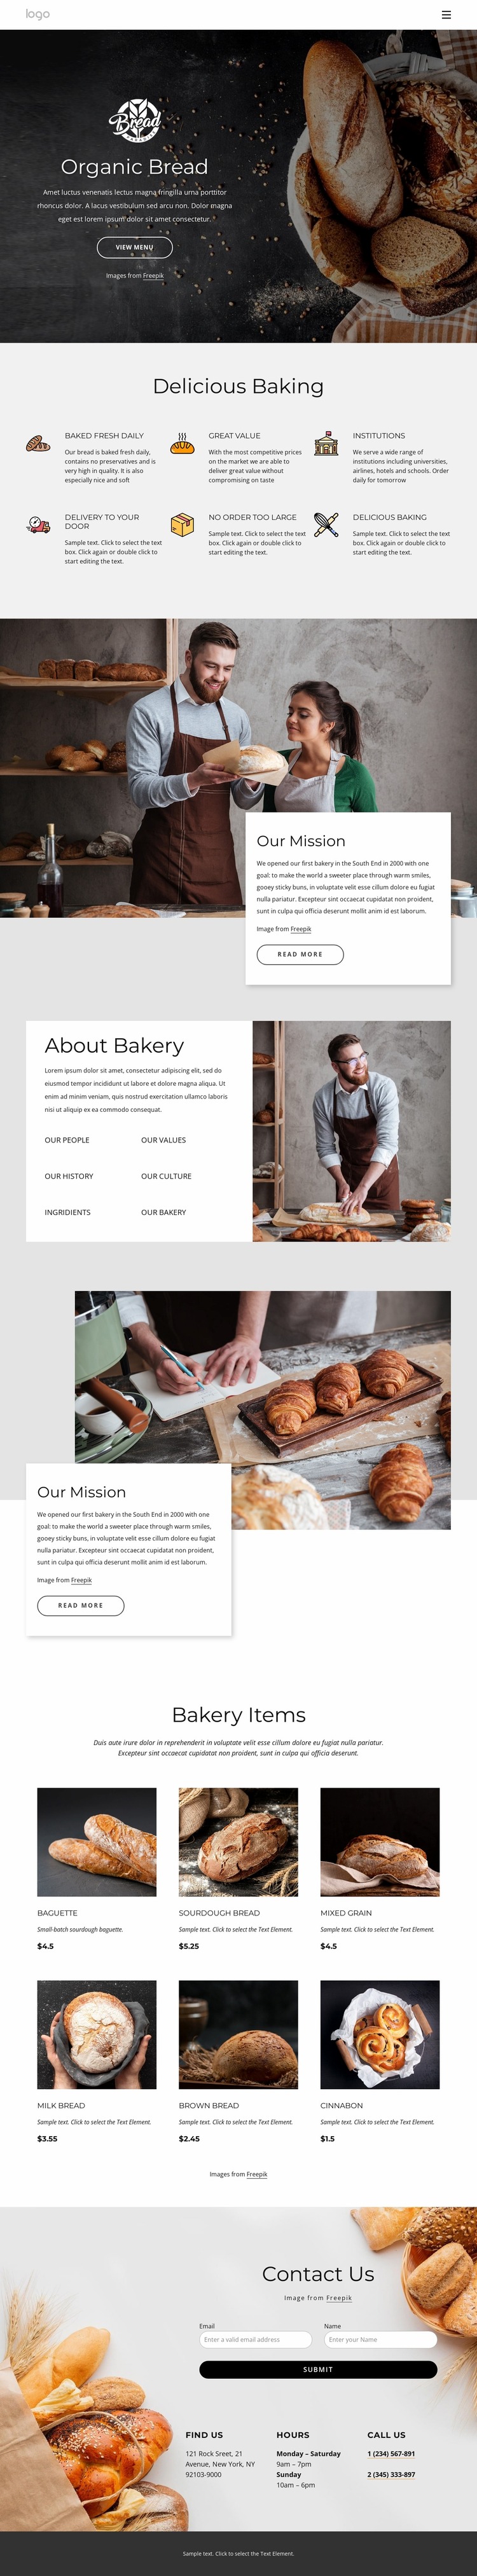 Bagels, buns, rolls, biscuits and loaf breads Website Mockup